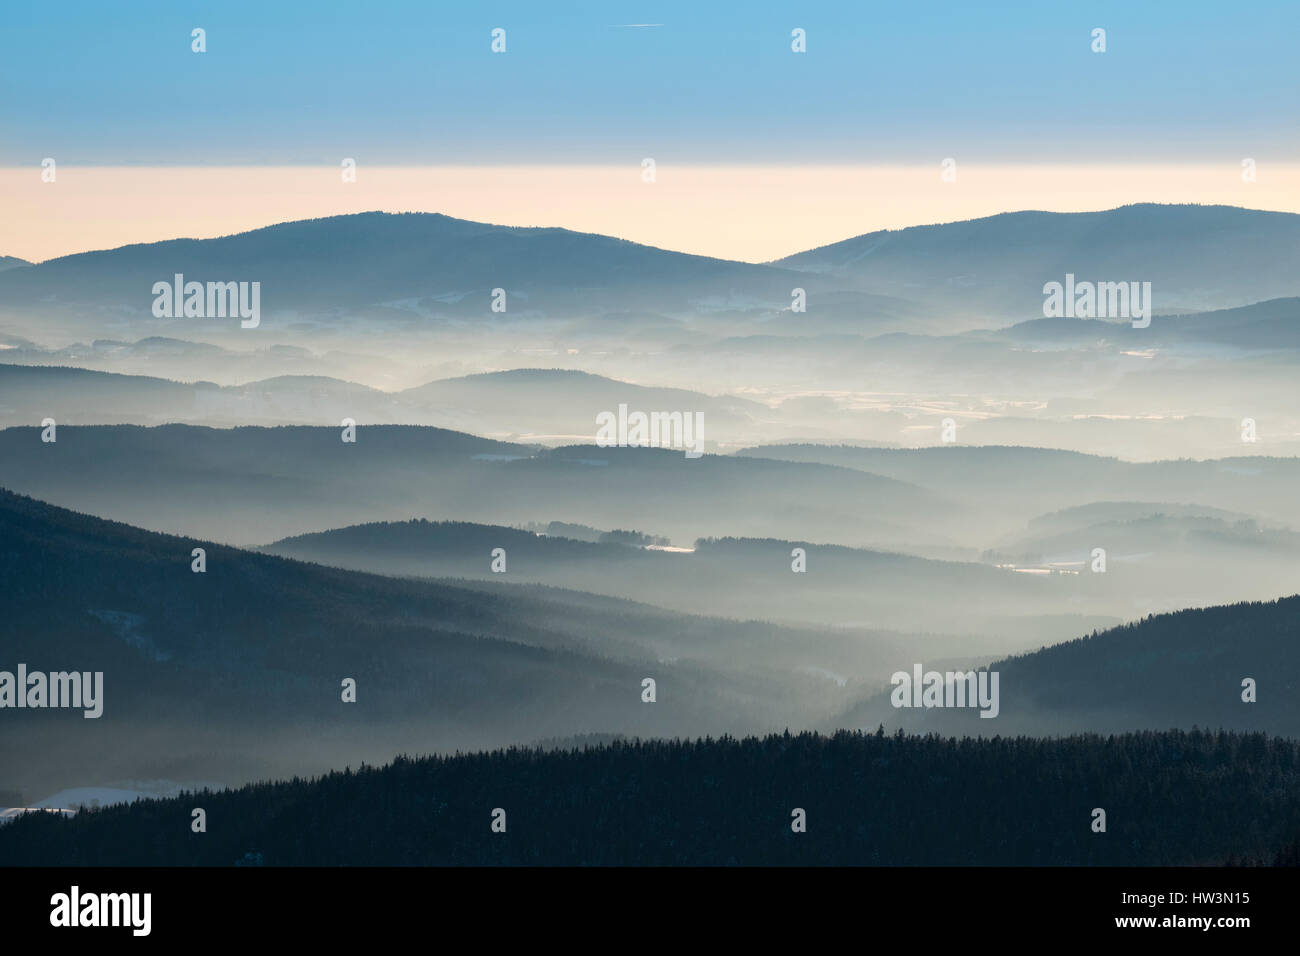 La nebbia in valle, vista dal grande Arber nella neve, riserva naturale della Foresta Bavarese, Bassa Baviera, Baviera, Germania Foto Stock